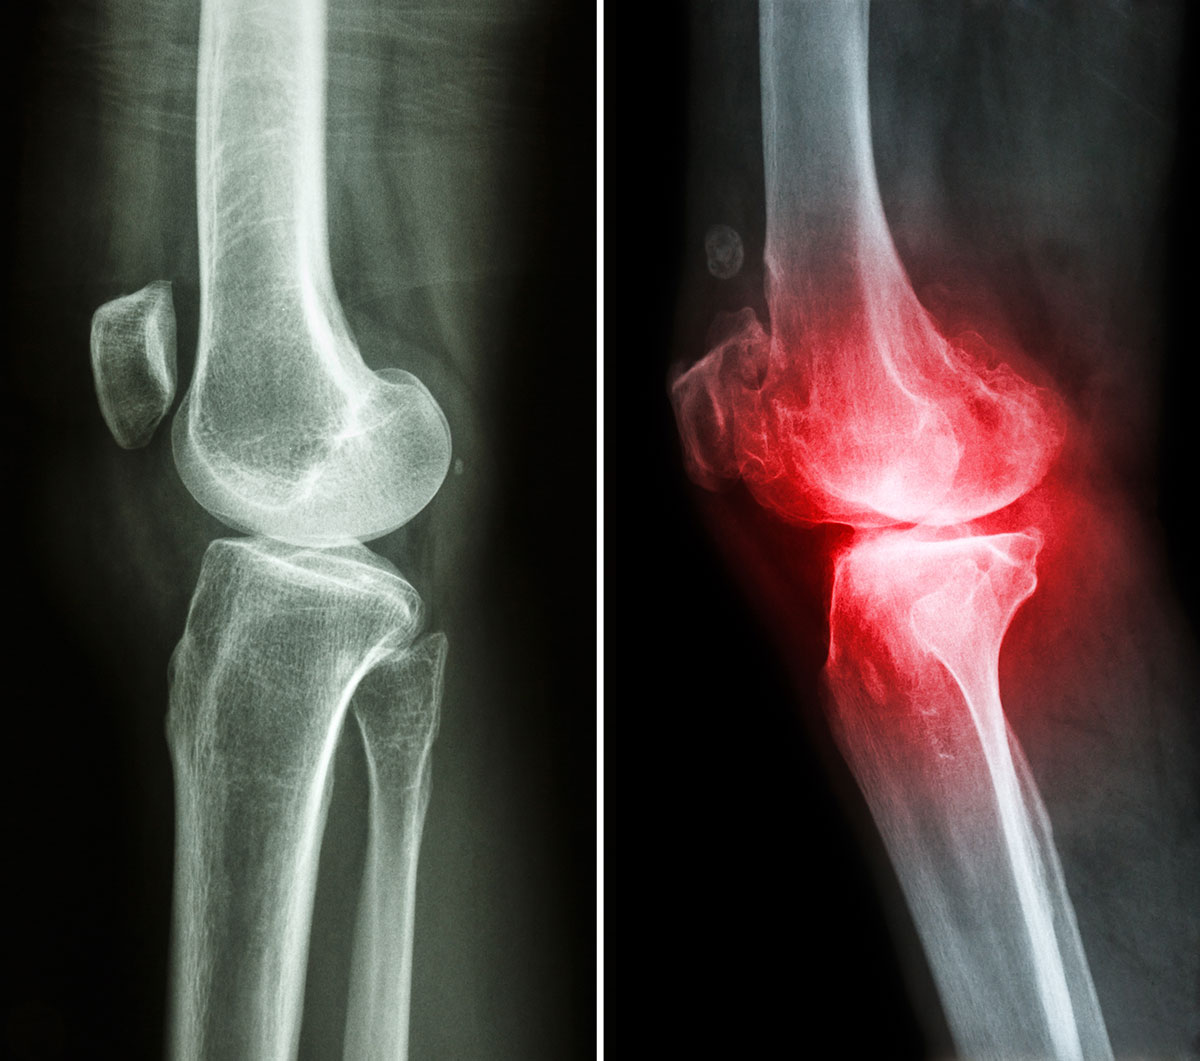 mit kell szedni osteoarthritis esetén erős fájdalom a térdízület hajlítása során